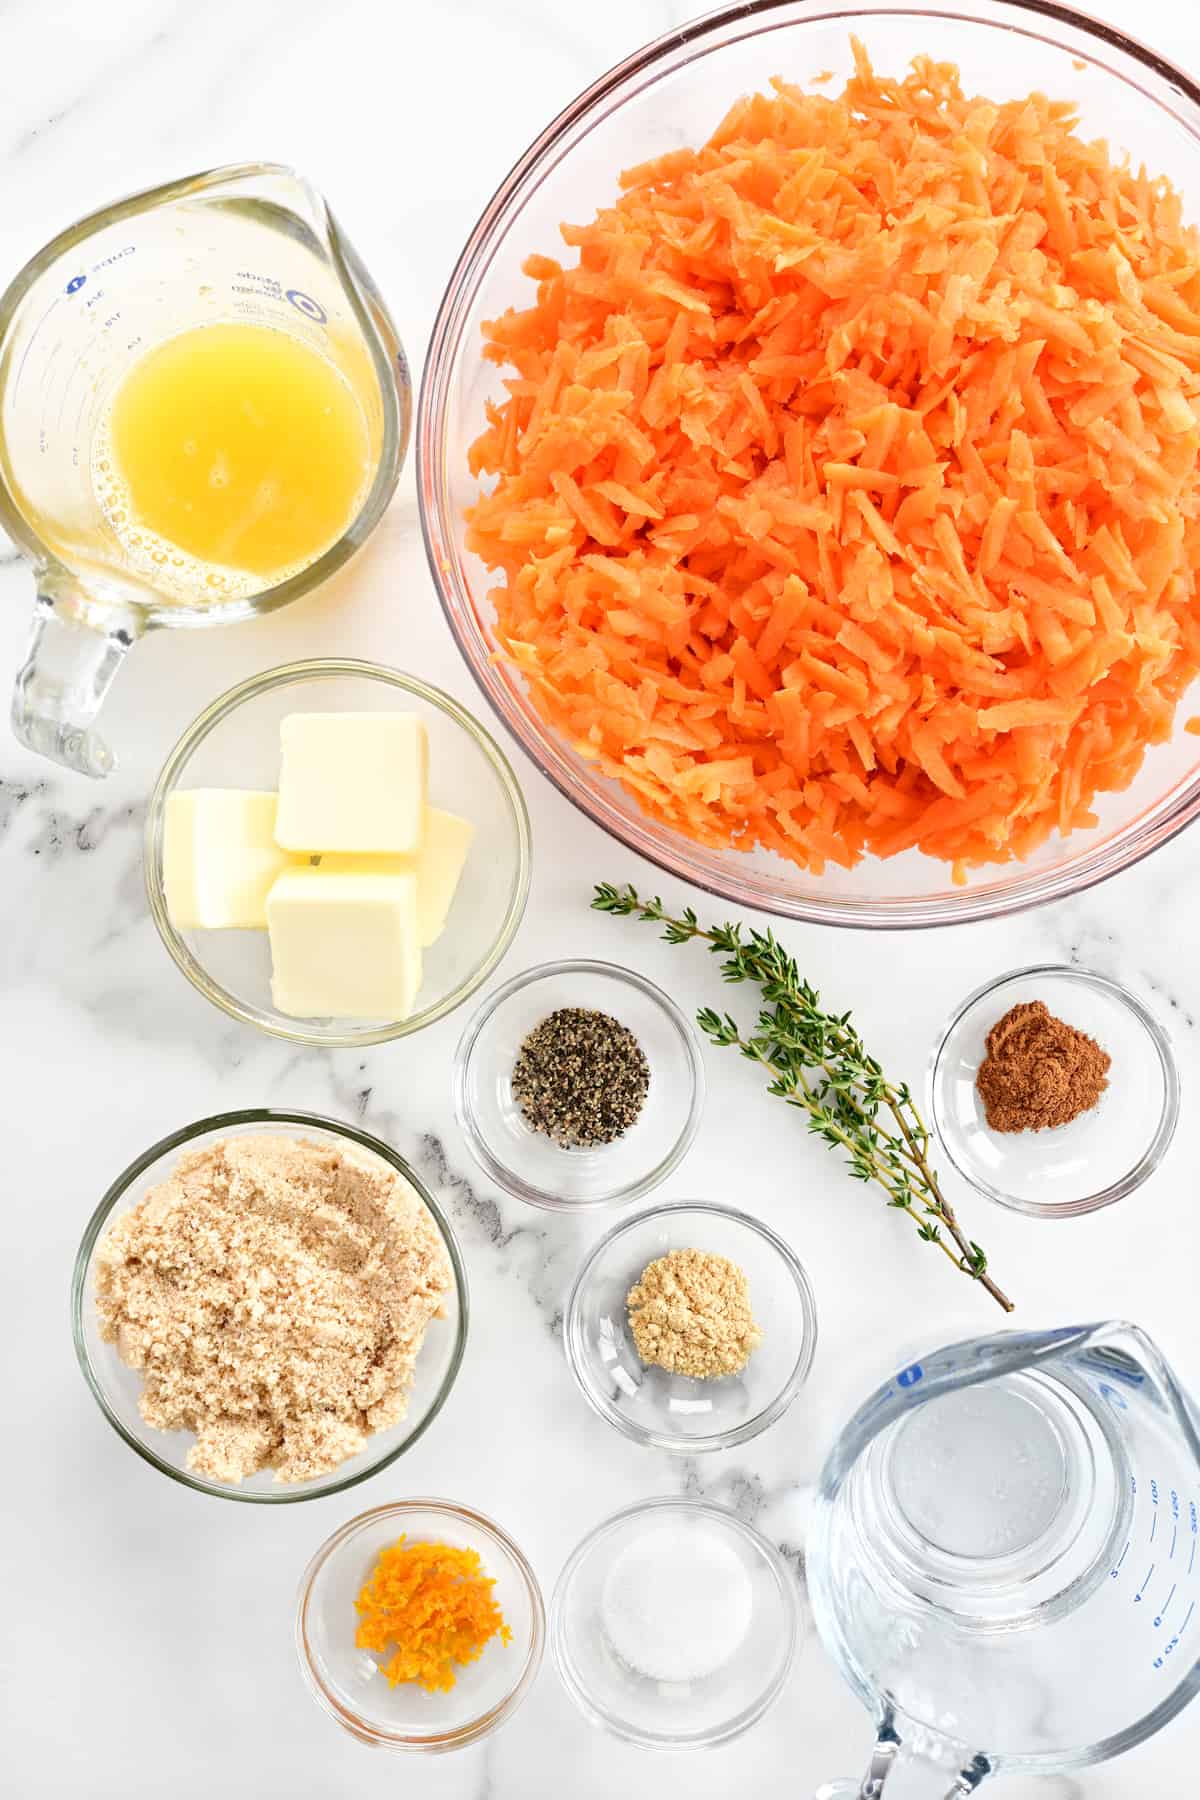 Ingredients for shredded glazed carrots.